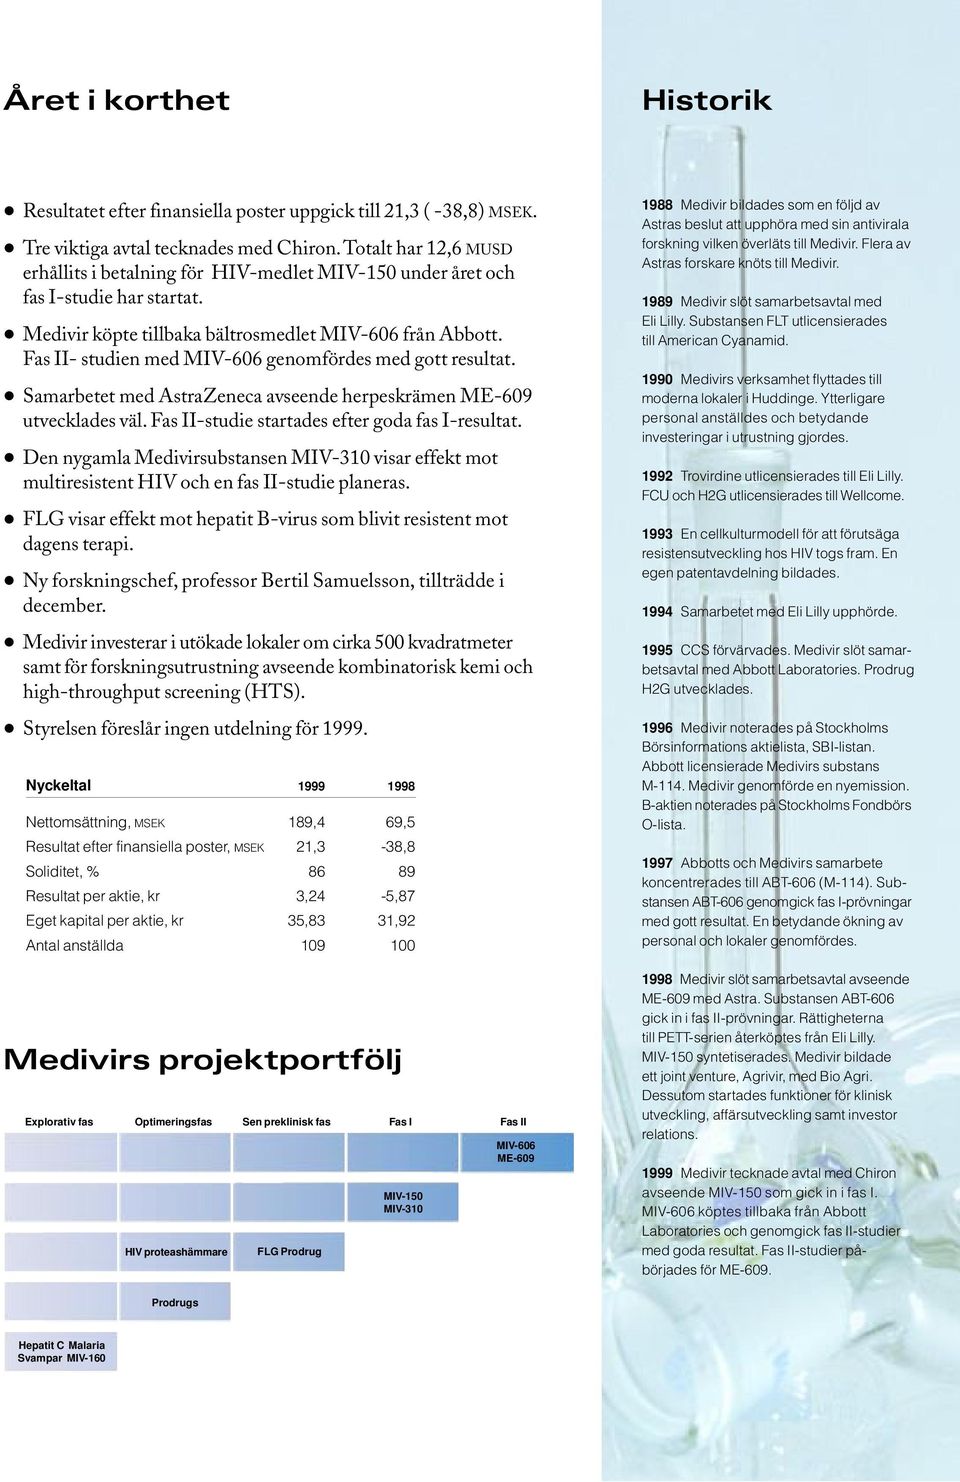 Fas II- studien med MIV-606 genomfördes med gott resultat. Samarbetet med AstraZeneca avseende herpeskrämen ME-609 utvecklades väl. Fas II-studie startades efter goda fas I-resultat.